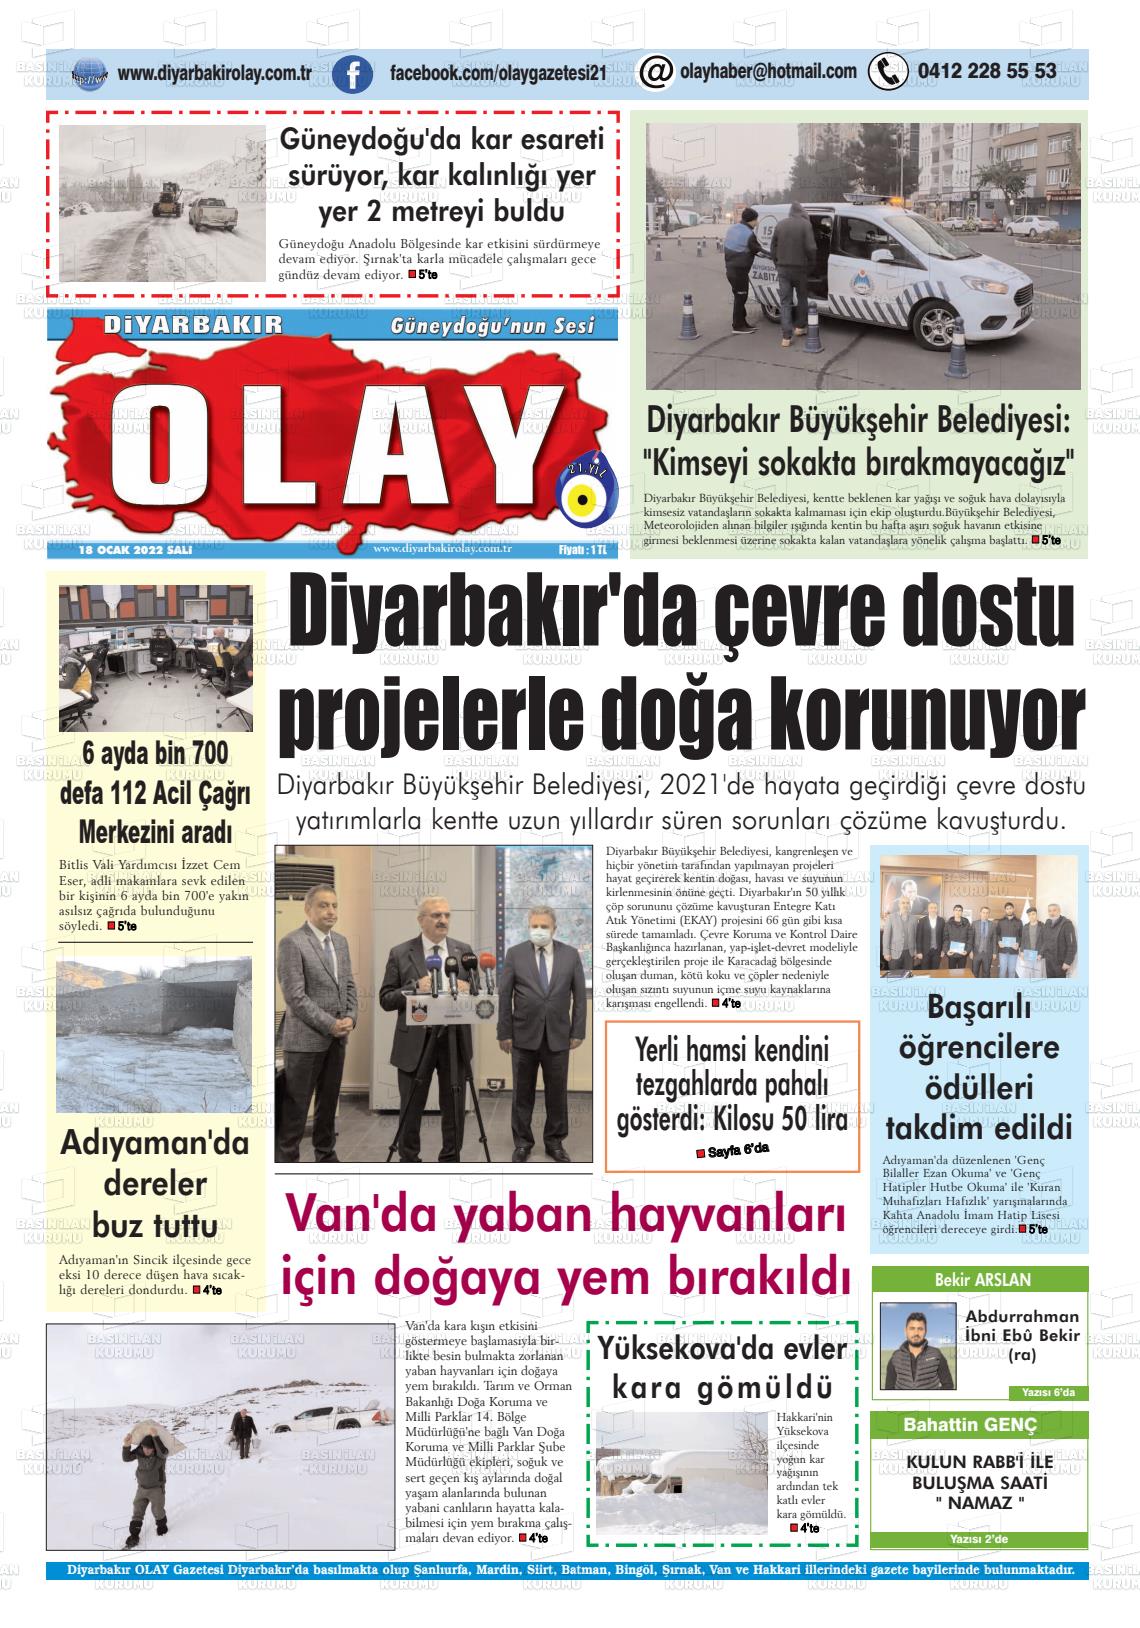 18 Ocak 2022 Diyarbakir Olay Gazete Manşeti